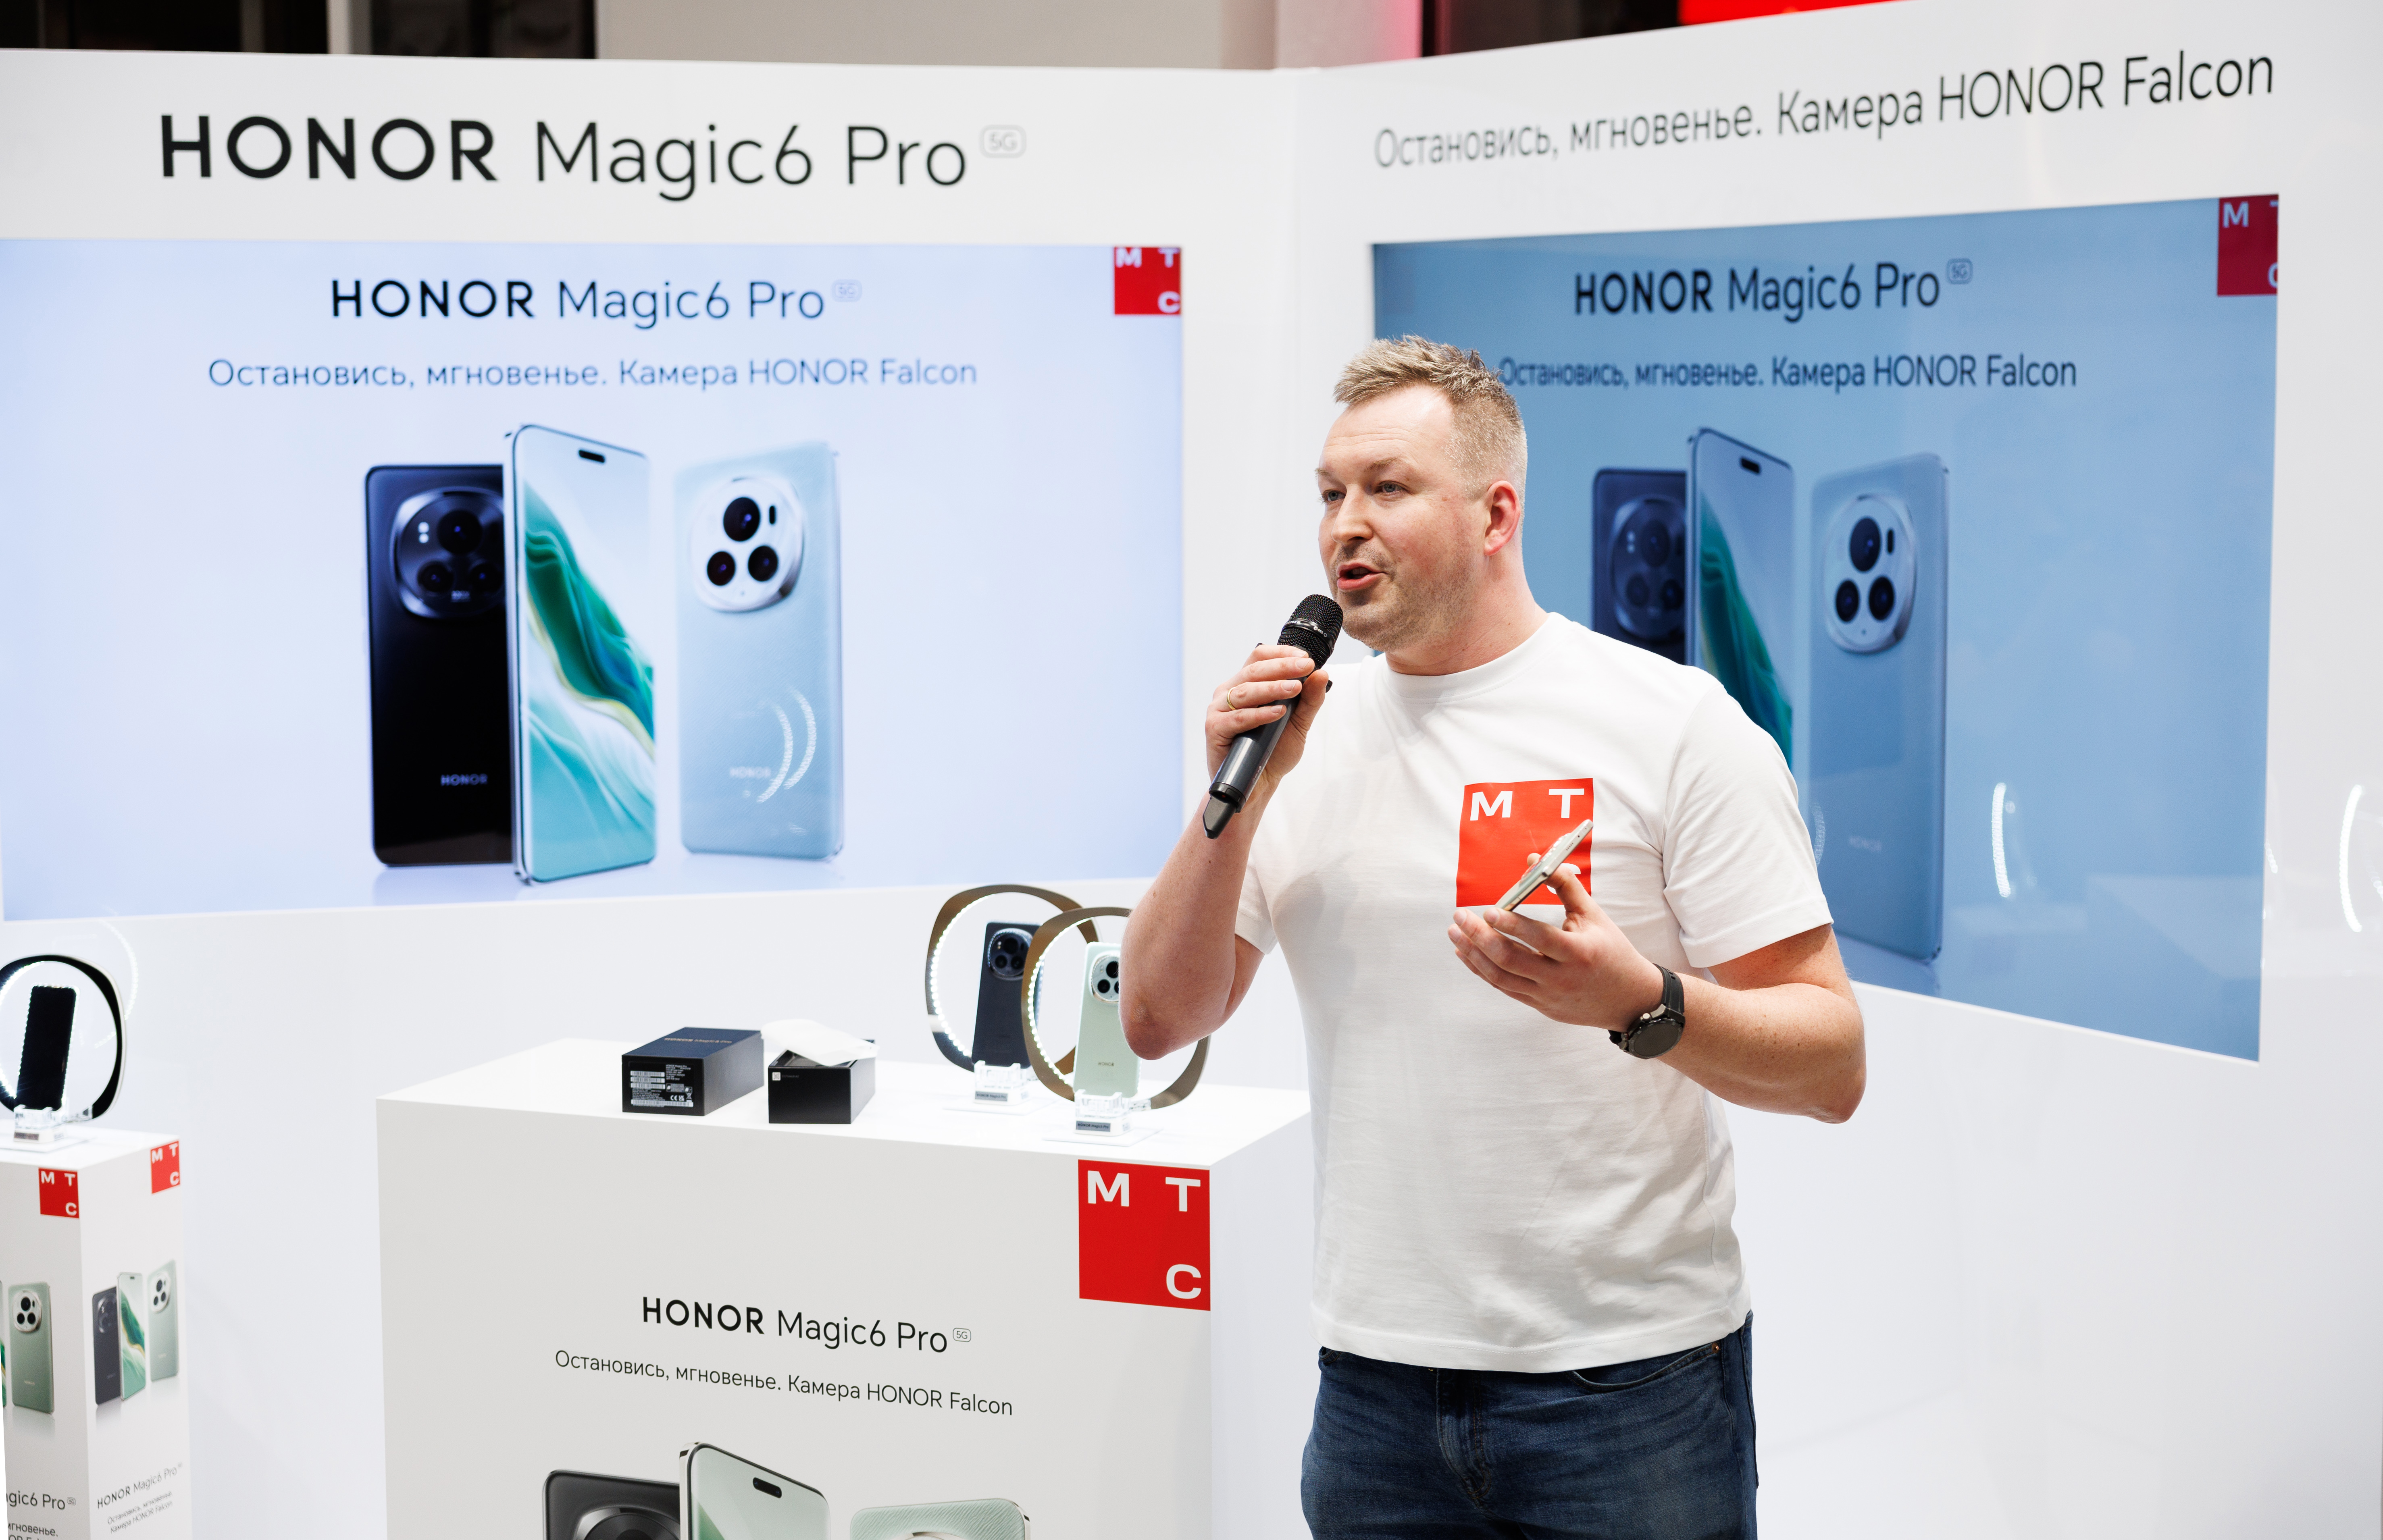 Жителям Коми доступен предзаказ на флагманский смартфон HONOR Magic6 Pro 